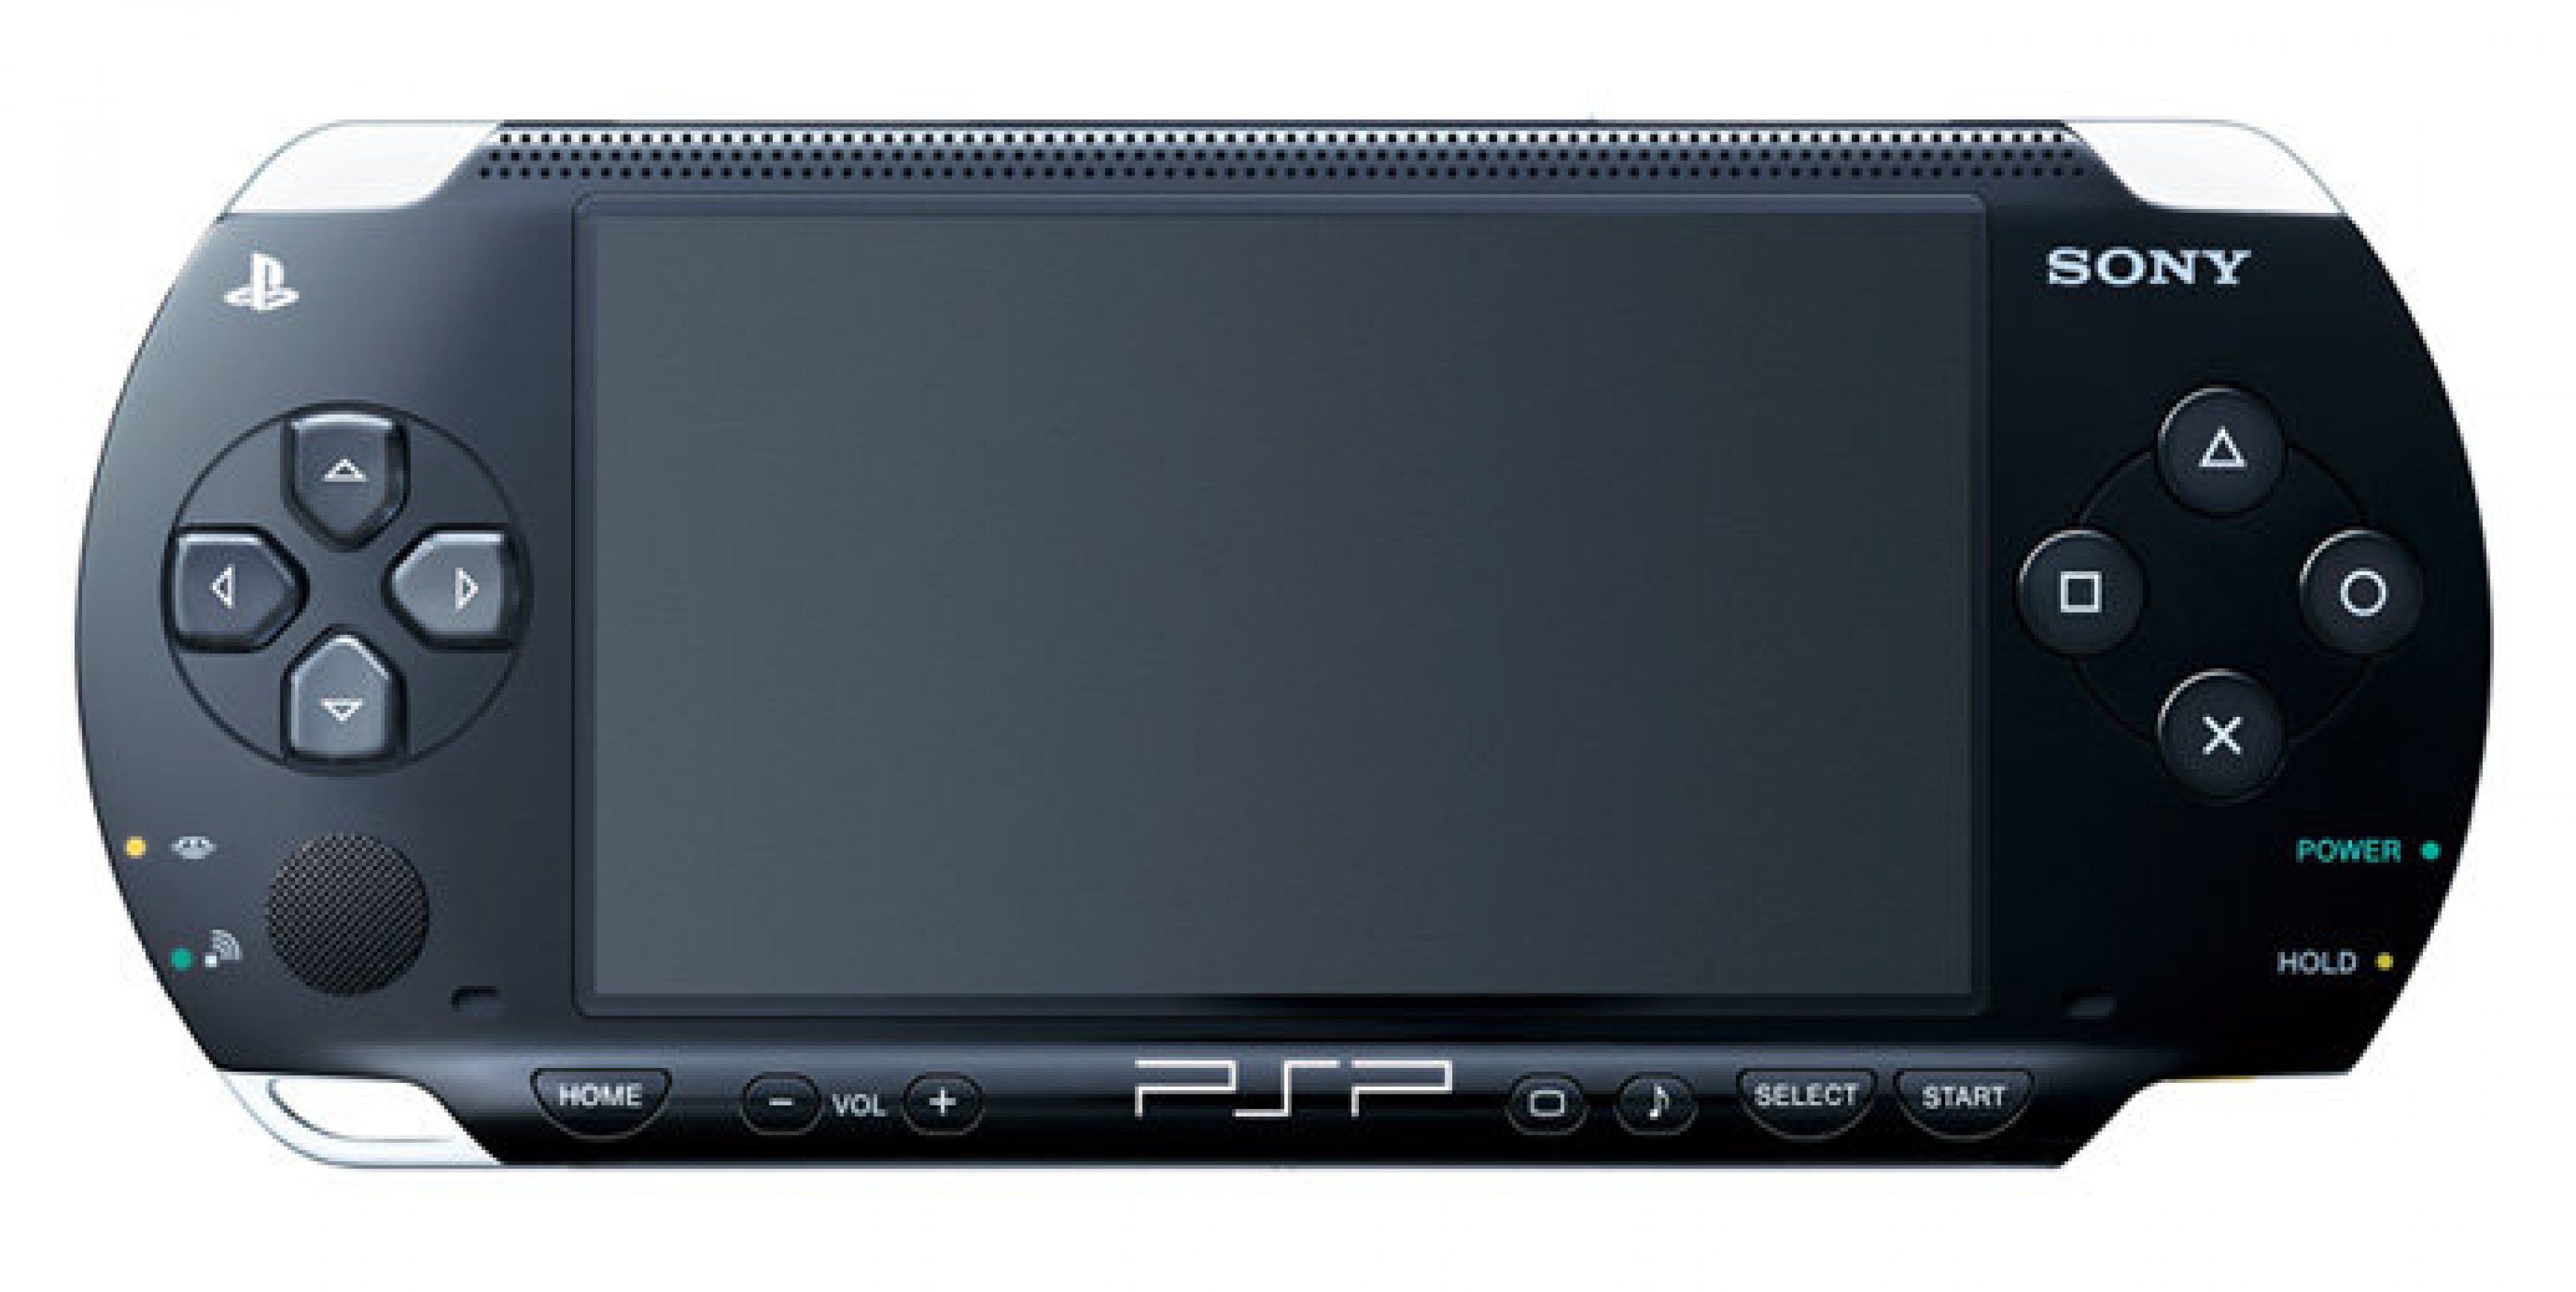 Игровая приставка найти. Игровая приставка ПСП 3008. Sony PLAYSTATION Portable PSP 3000. Sony PLAYSTATION Portable Slim & Lite PSP-3000. Сони ПСП 3008.